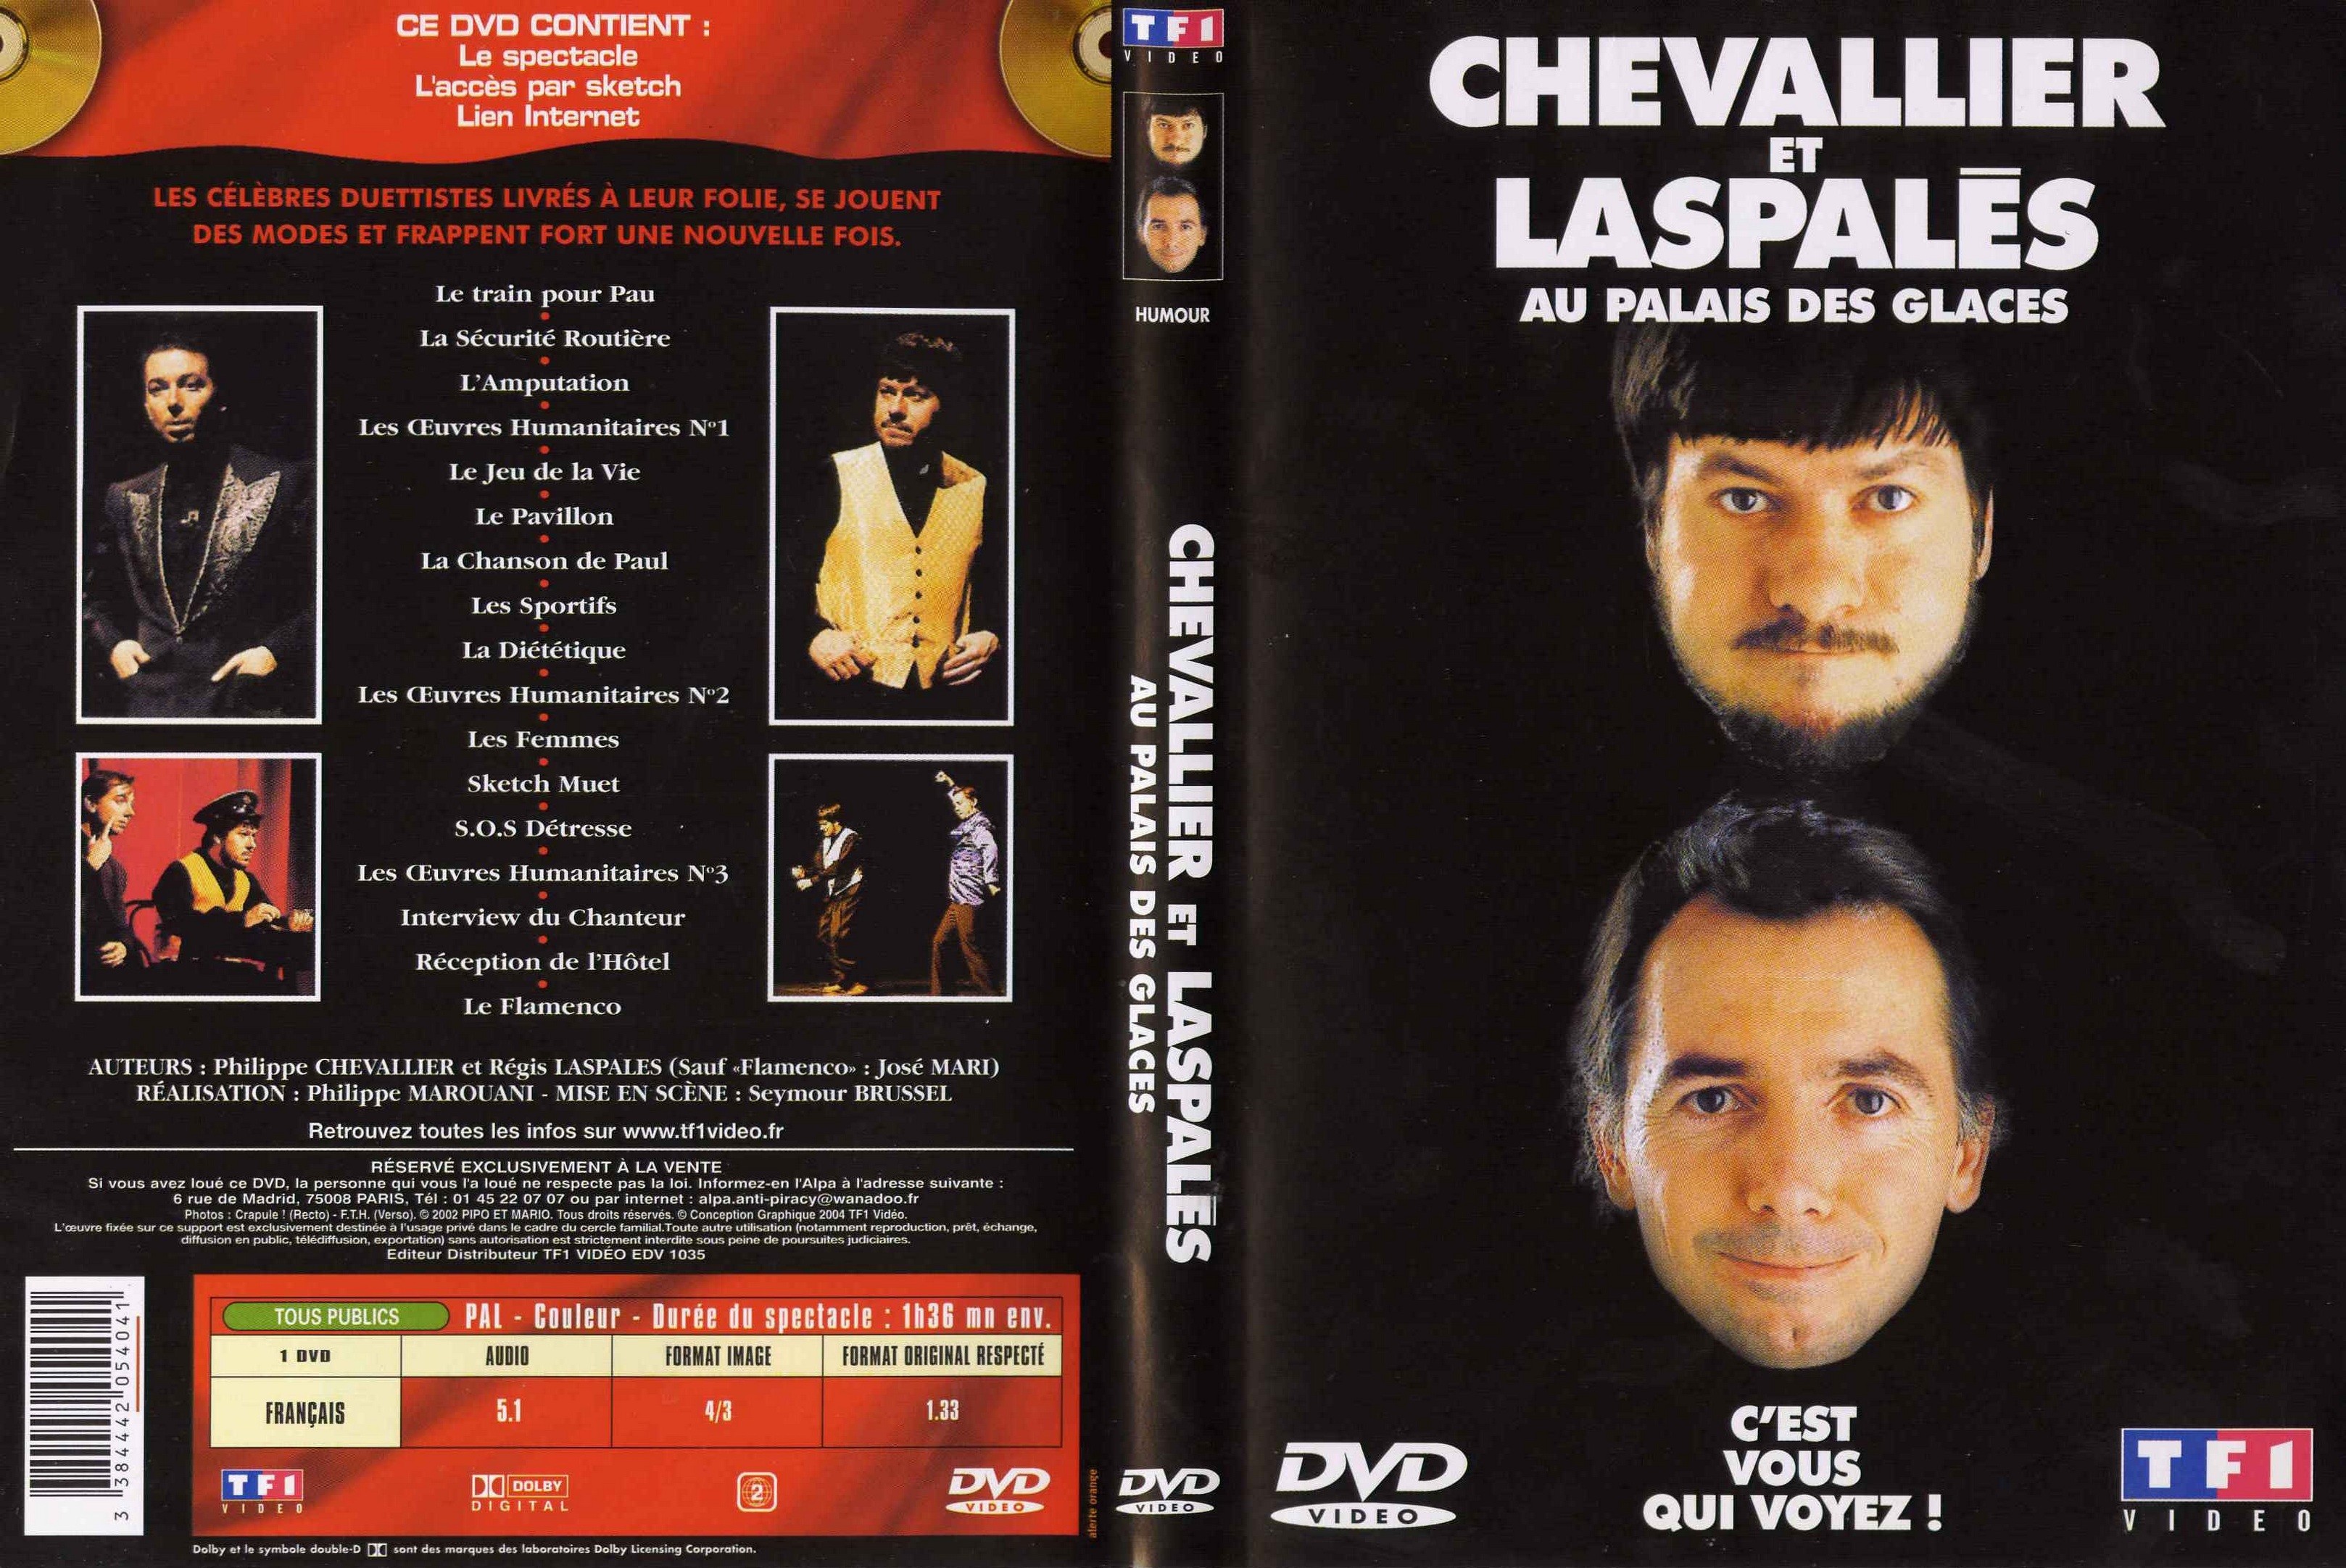 Jaquette DVD Chevalier et Laspales au palais des glaces